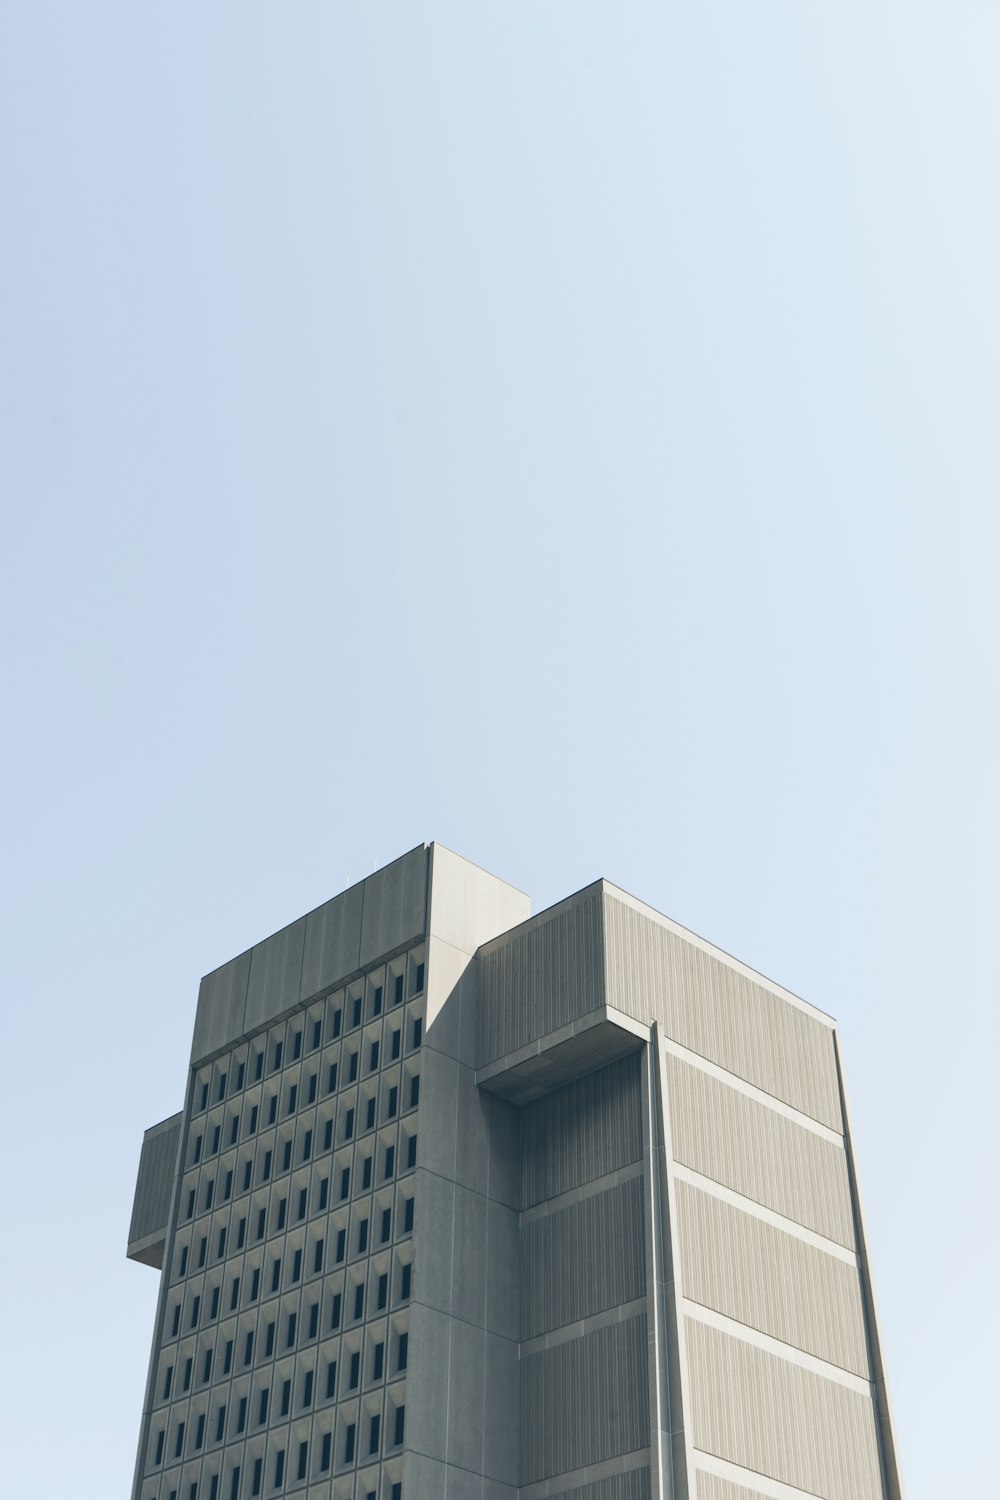 Tiefwinkelfotografie von grauen Gebäuden